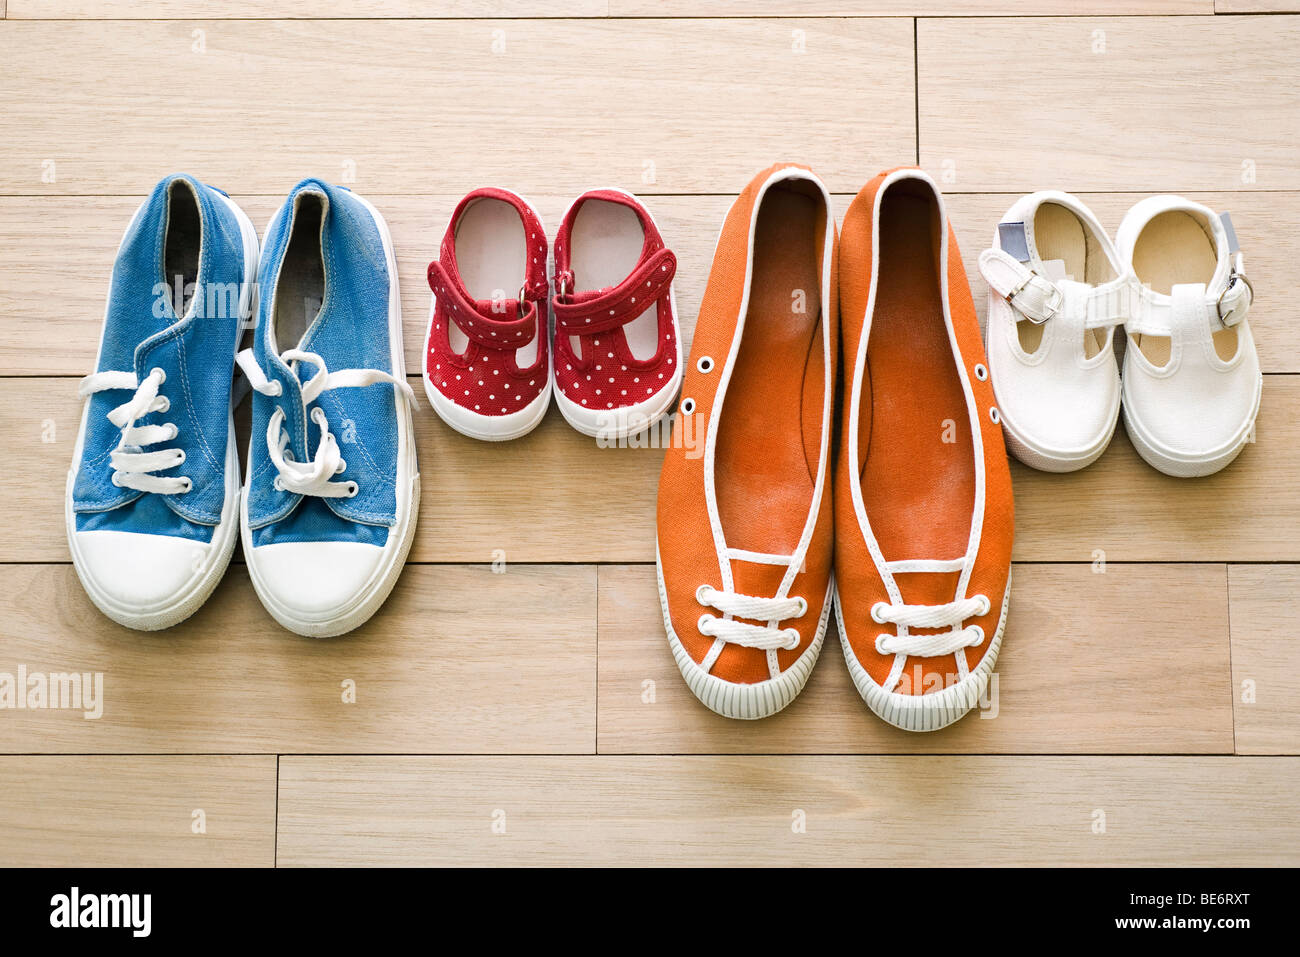 Les chaussures de la famille alignés ensemble Photo Stock - Alamy